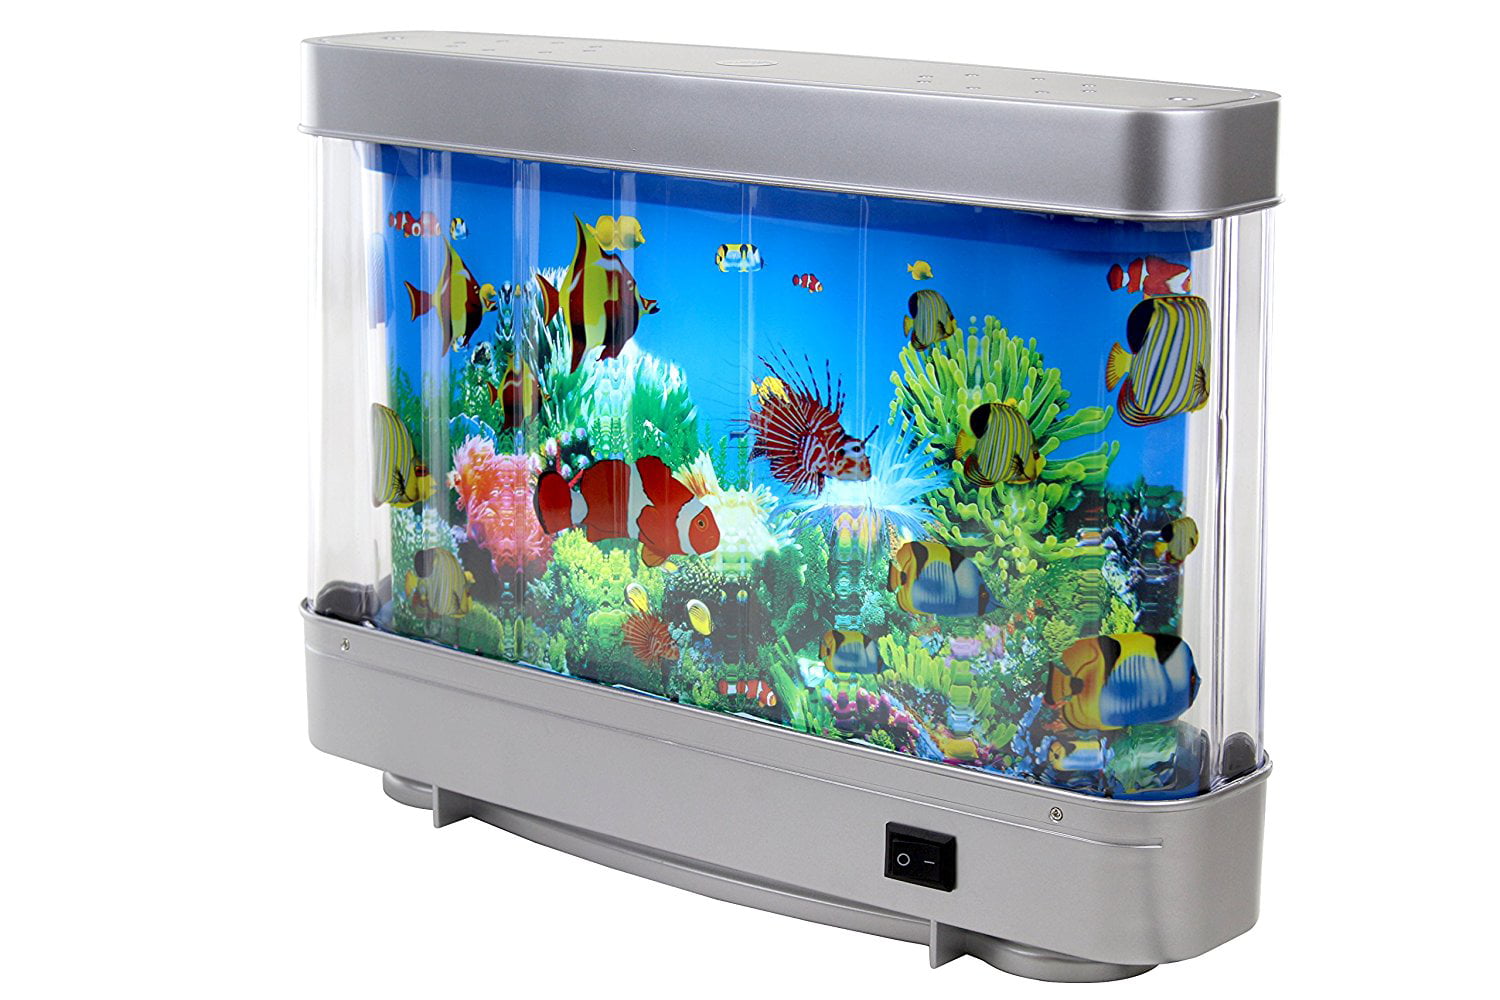 Fake Aquarium With Moving Fish 1000+ Aquarium Ideas